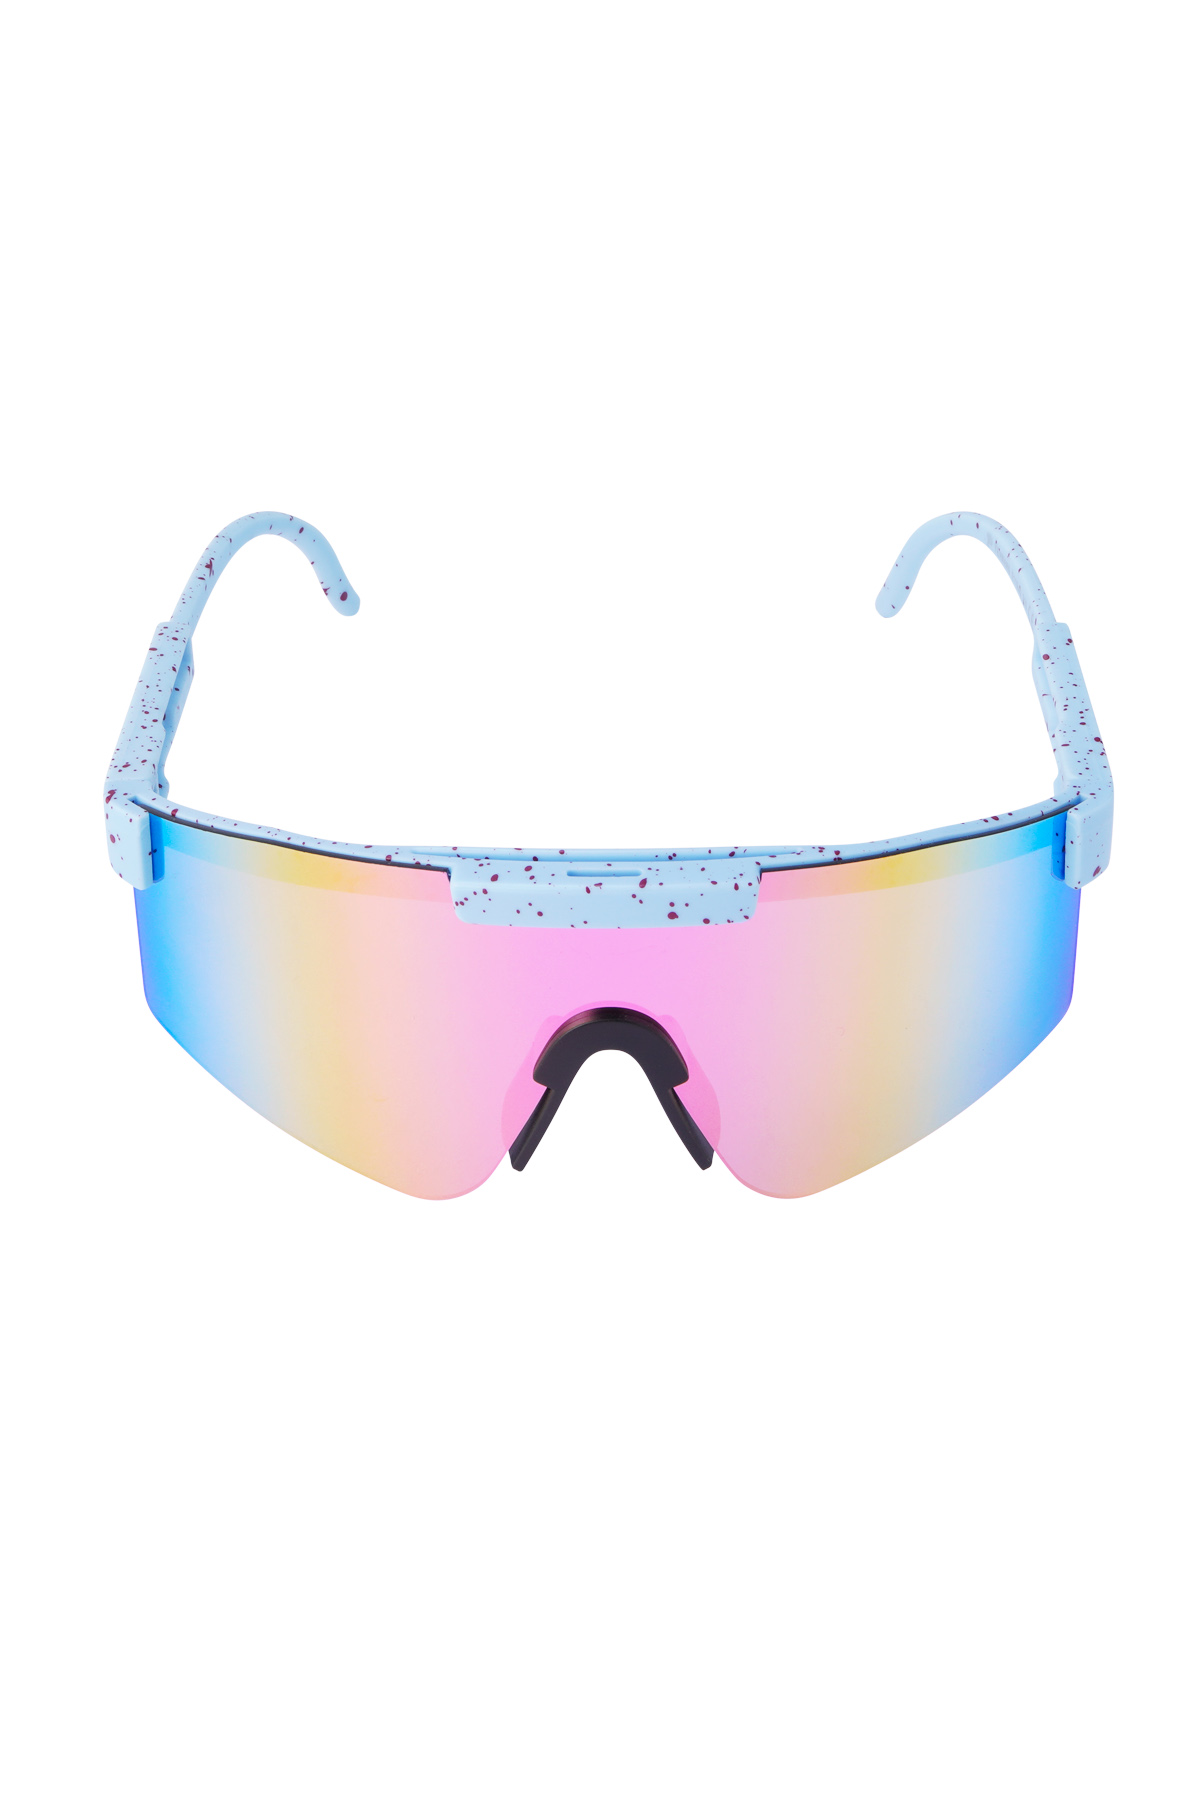 Güneş gözlüğü baskılı renkli lensler - mavi Resim6